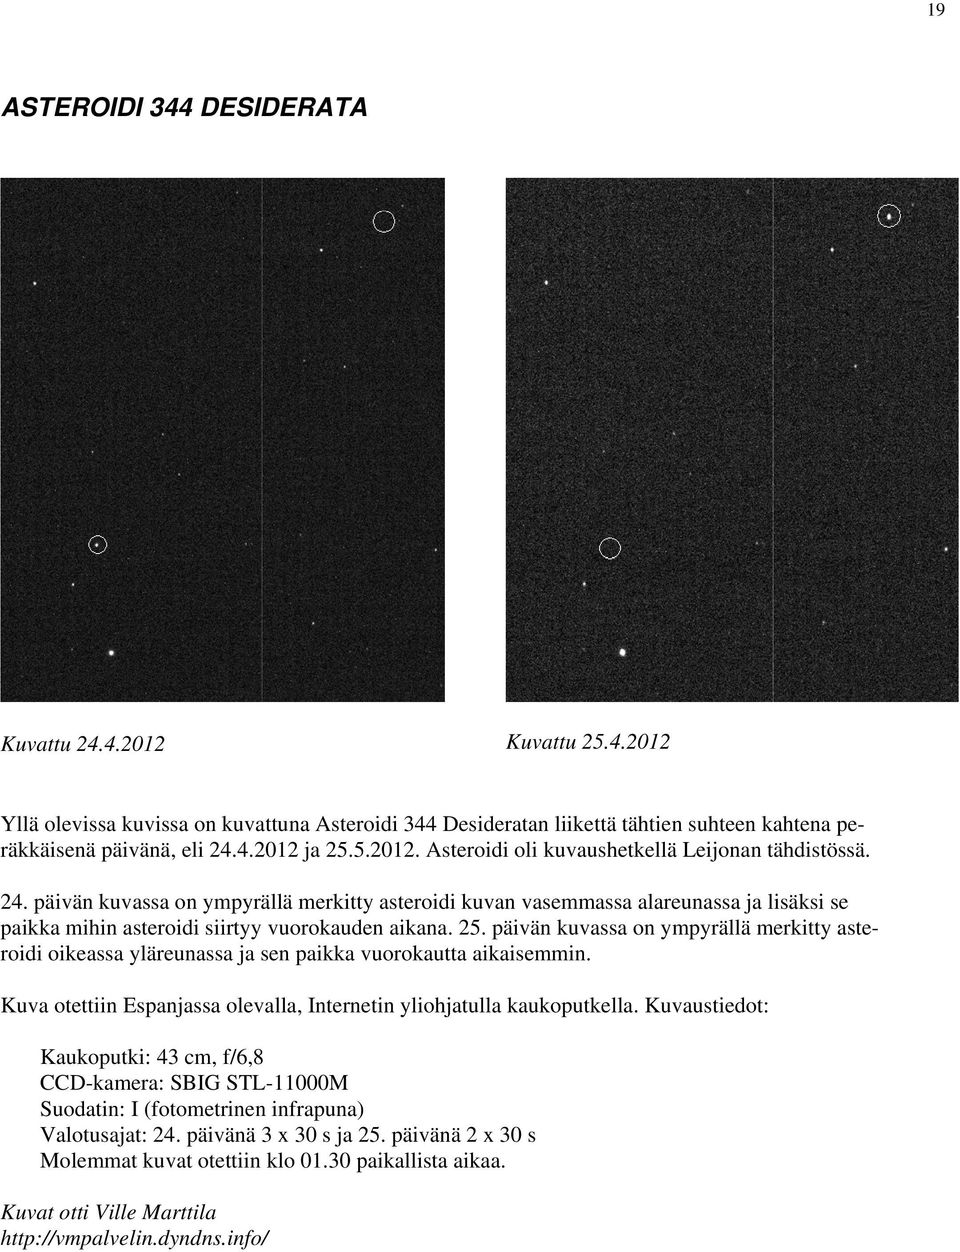 päivän kuvassa on ympyrällä merkitty asteroidi kuvan vasemmassa alareunassa ja lisäksi se paikka mihin asteroidi siirtyy vuorokauden aikana. 25.